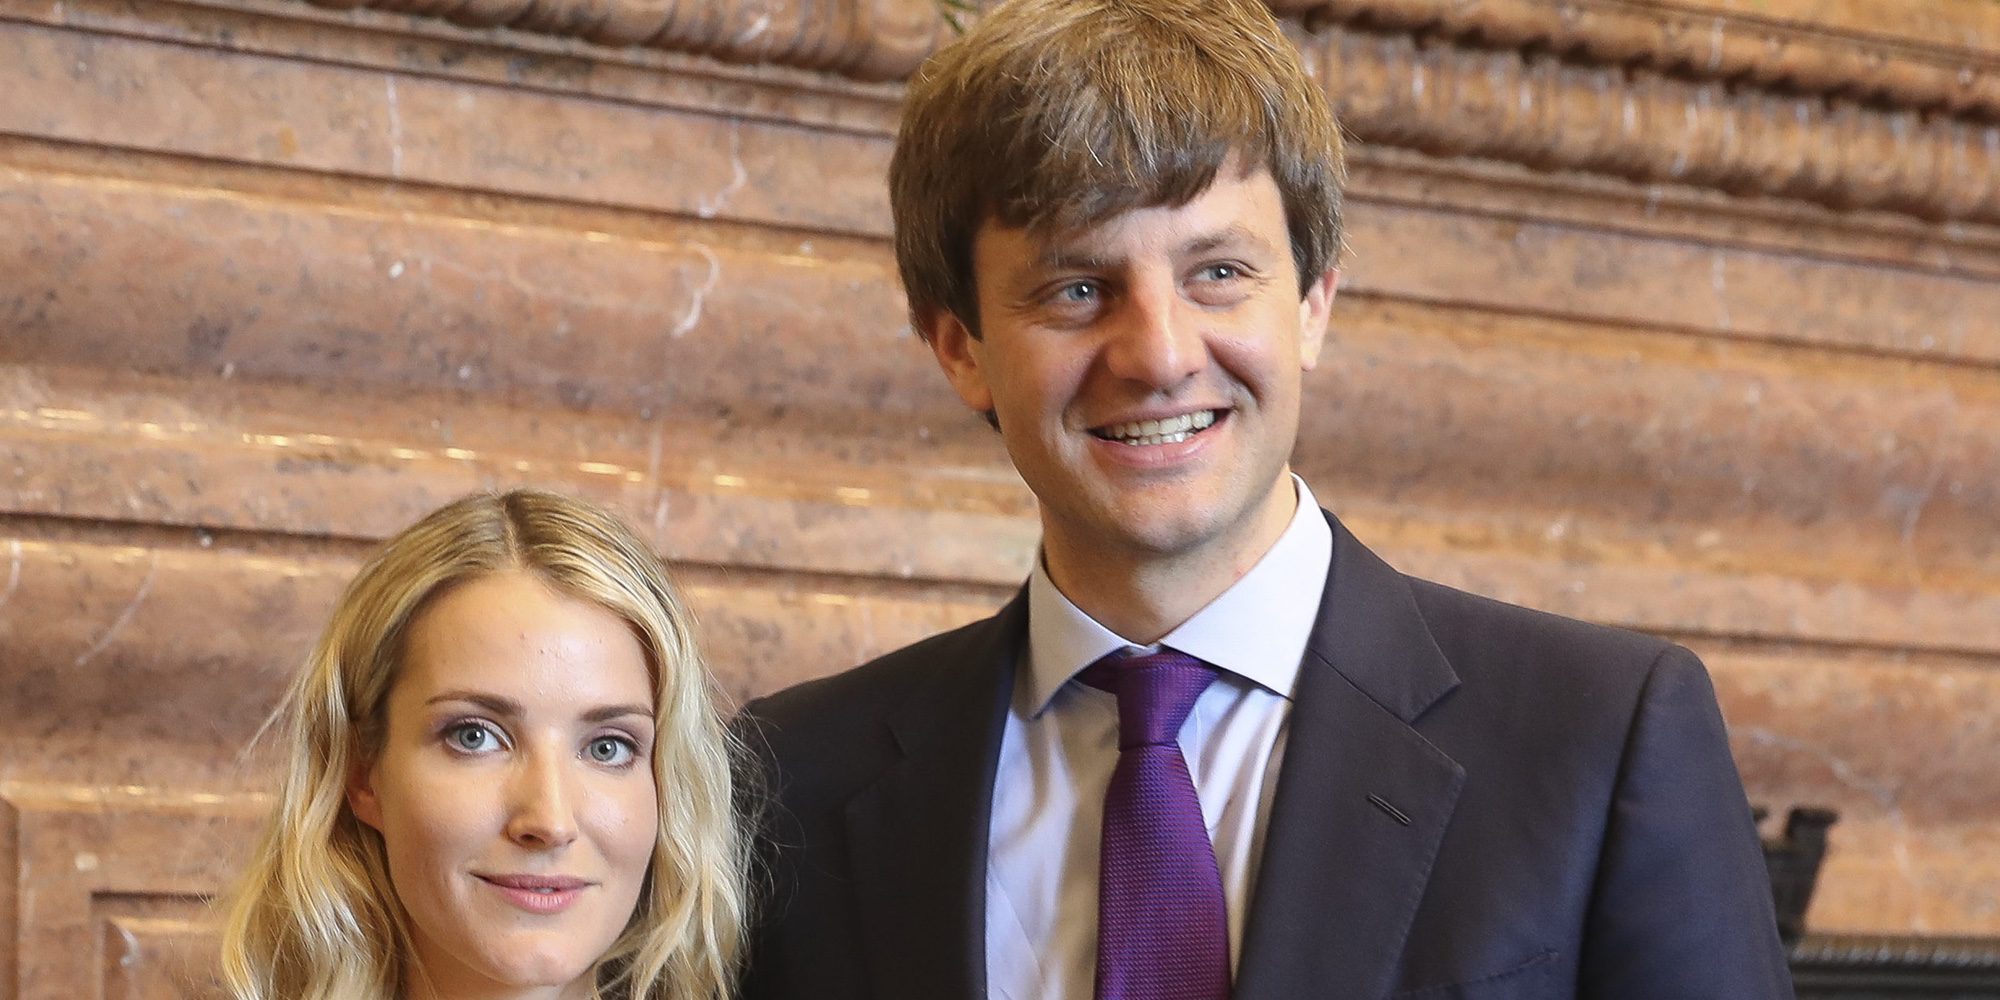 Ernesto Augusto de Hannover y Ekaterina Malyseva esperan su primer hijo